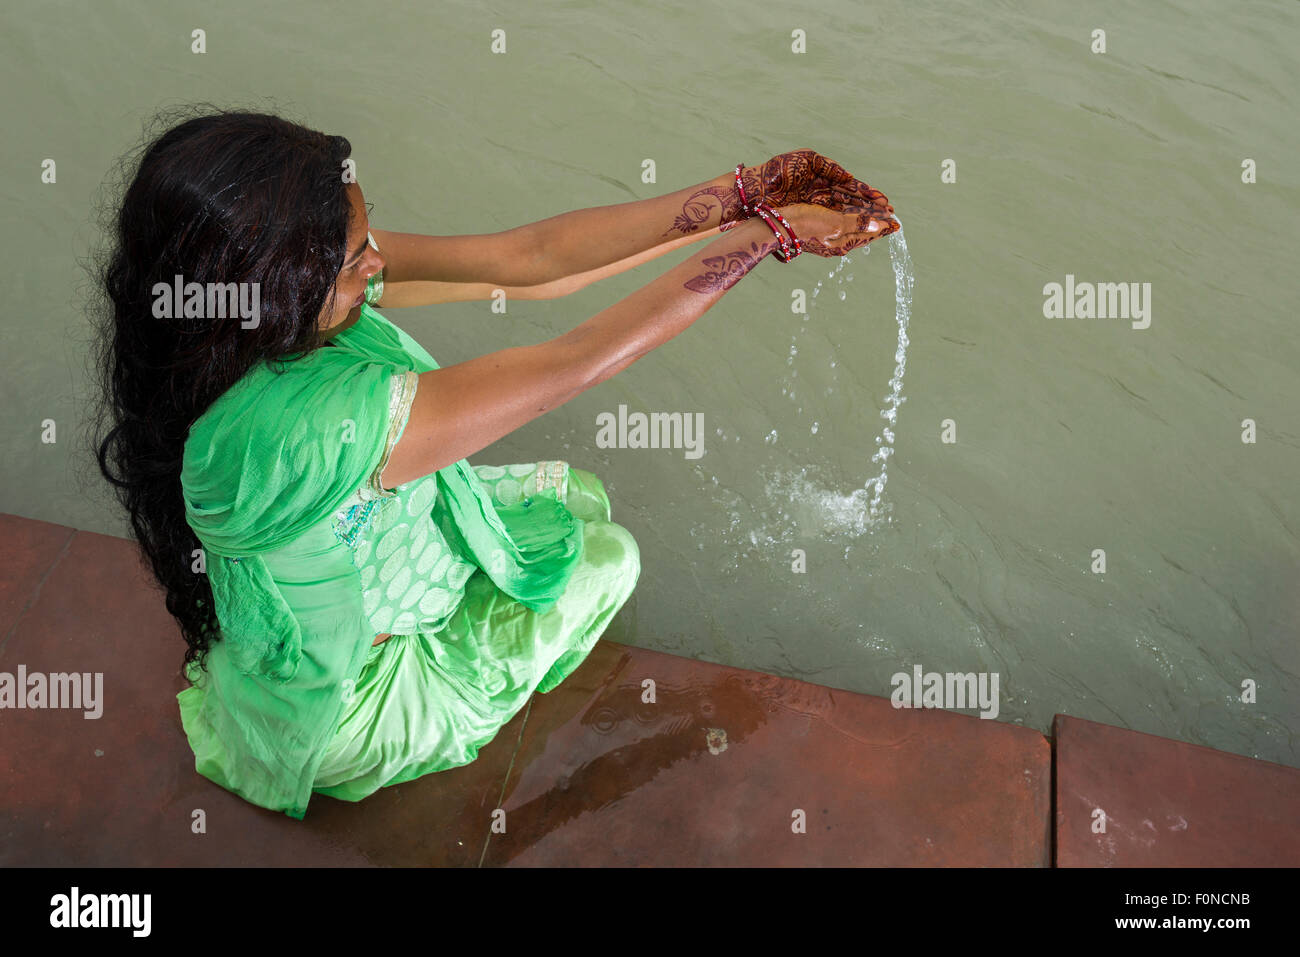 Eine junge Frau mit langen schwarzen Haaren, Henna bemalte Hände und ein grünes Kleid ist an den Ghats von dem heiligen Fluss Ganges beten. Stockfoto